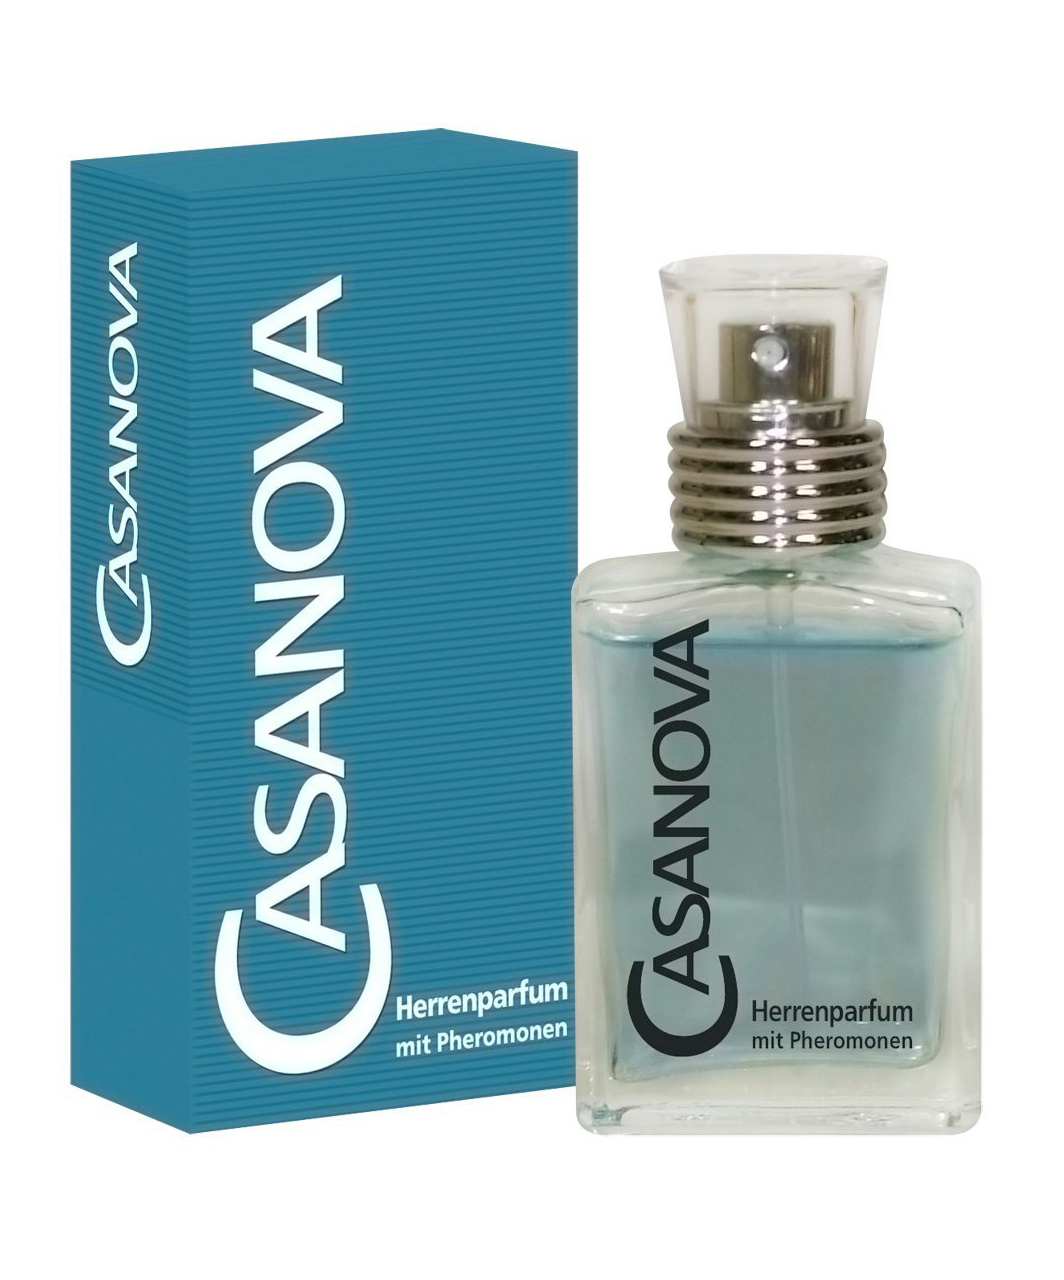 OV Casanova (30 ml)